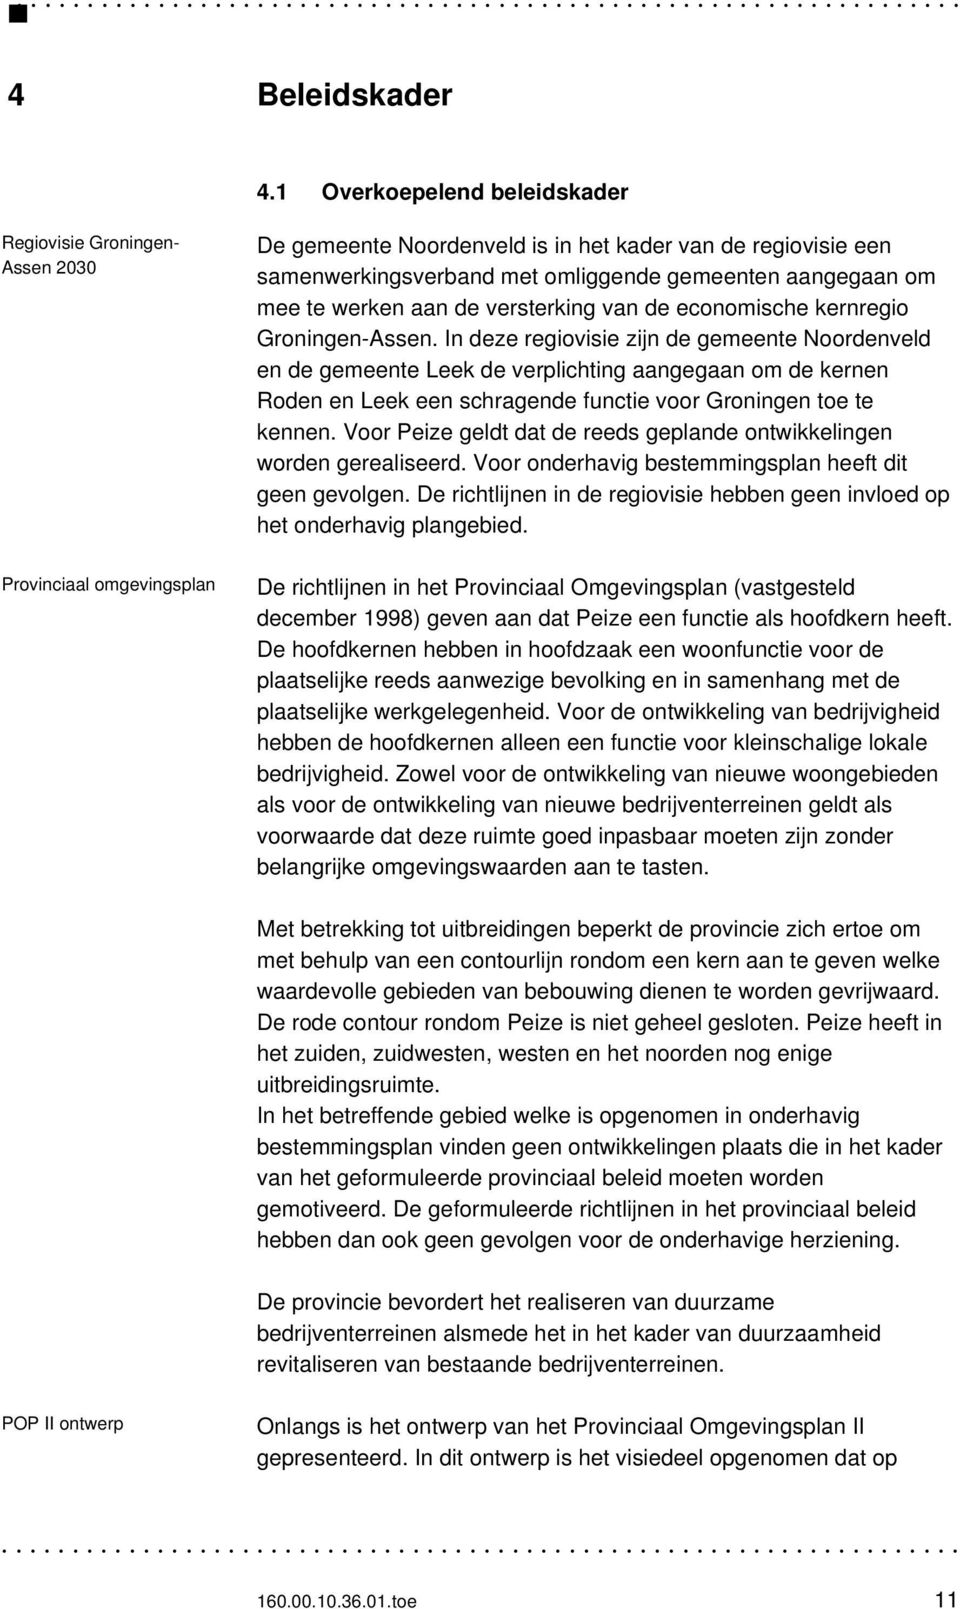 aangegaan om mee te werken aan de versterking van de economische kernregio Groningen-Assen.